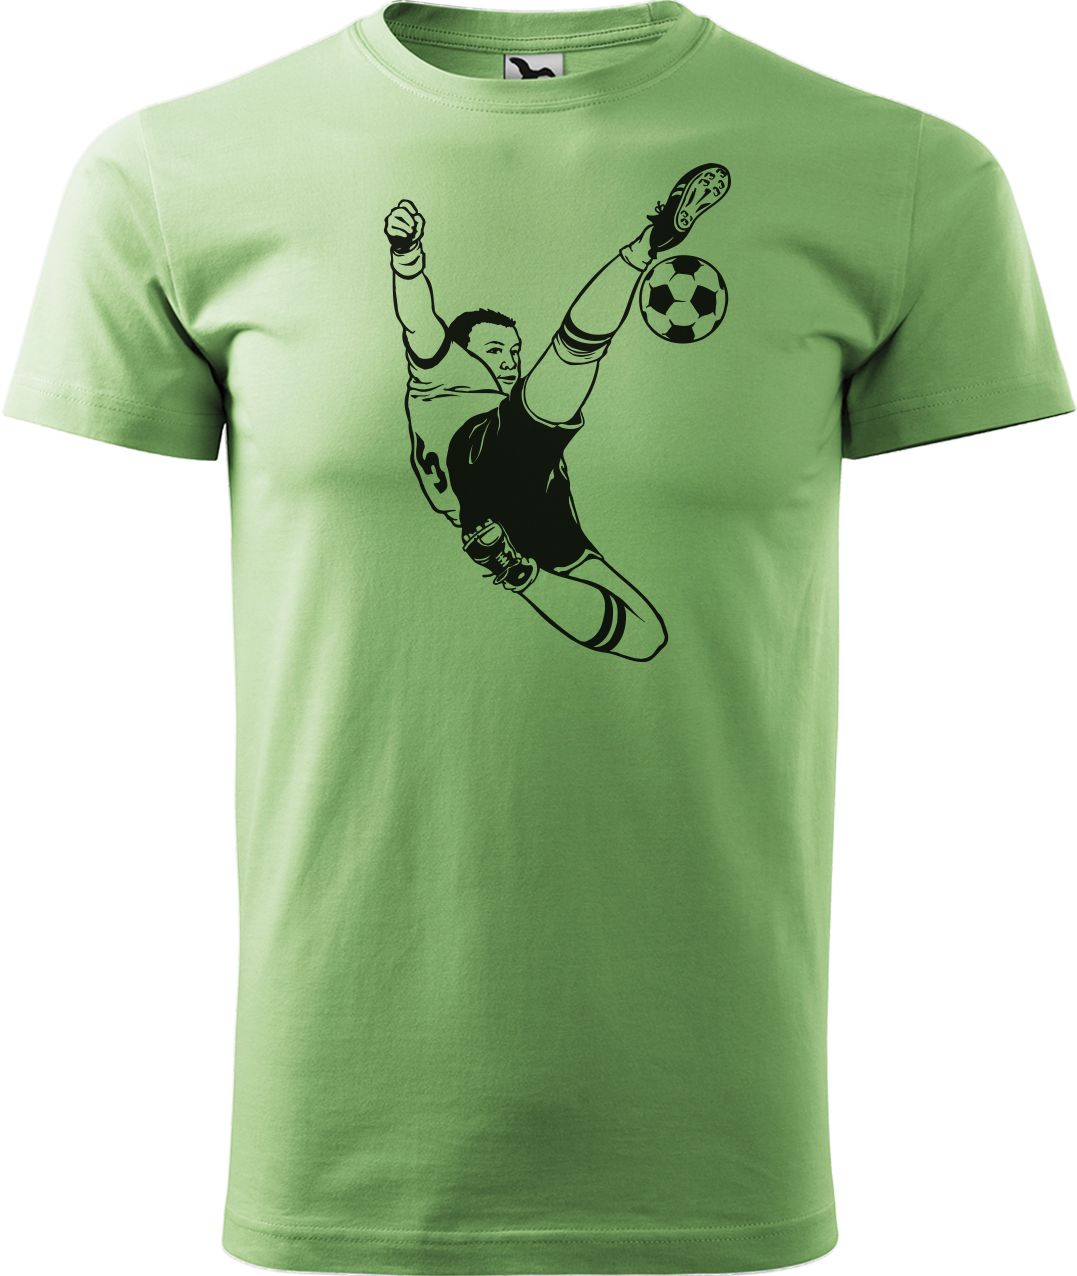 Tričko pro fotbalistu - Fotbalista s míčem Velikost: S, Barva: Trávově zelená (39)